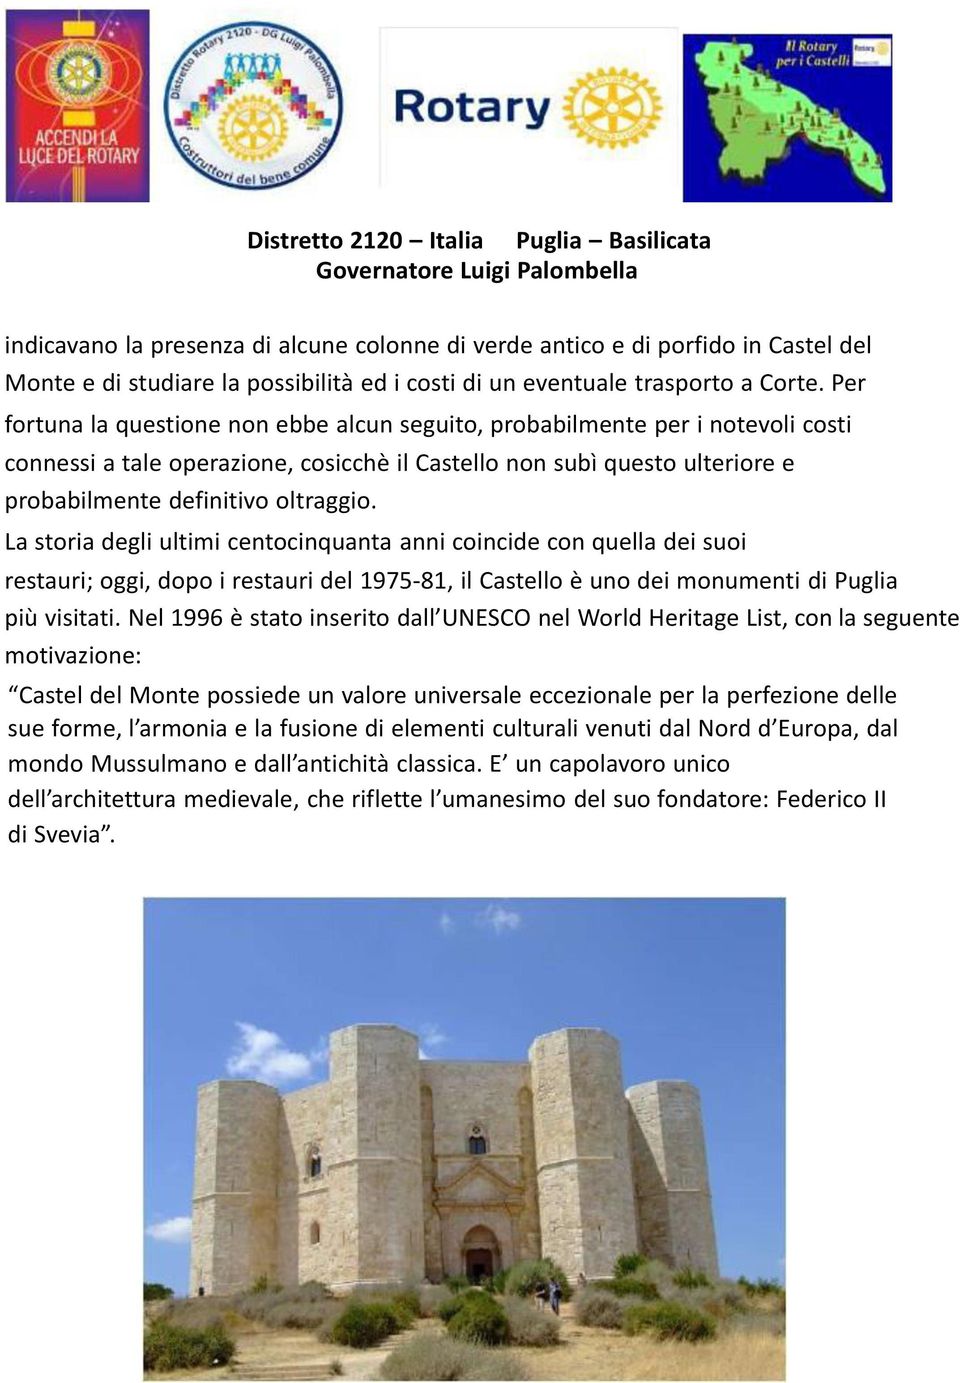 La storia degli ultimi centocinquanta anni coincide con quella dei suoi restauri; oggi, dopo i restauri del 1975-81, il Castello è uno dei monumenti di Puglia più visitati.